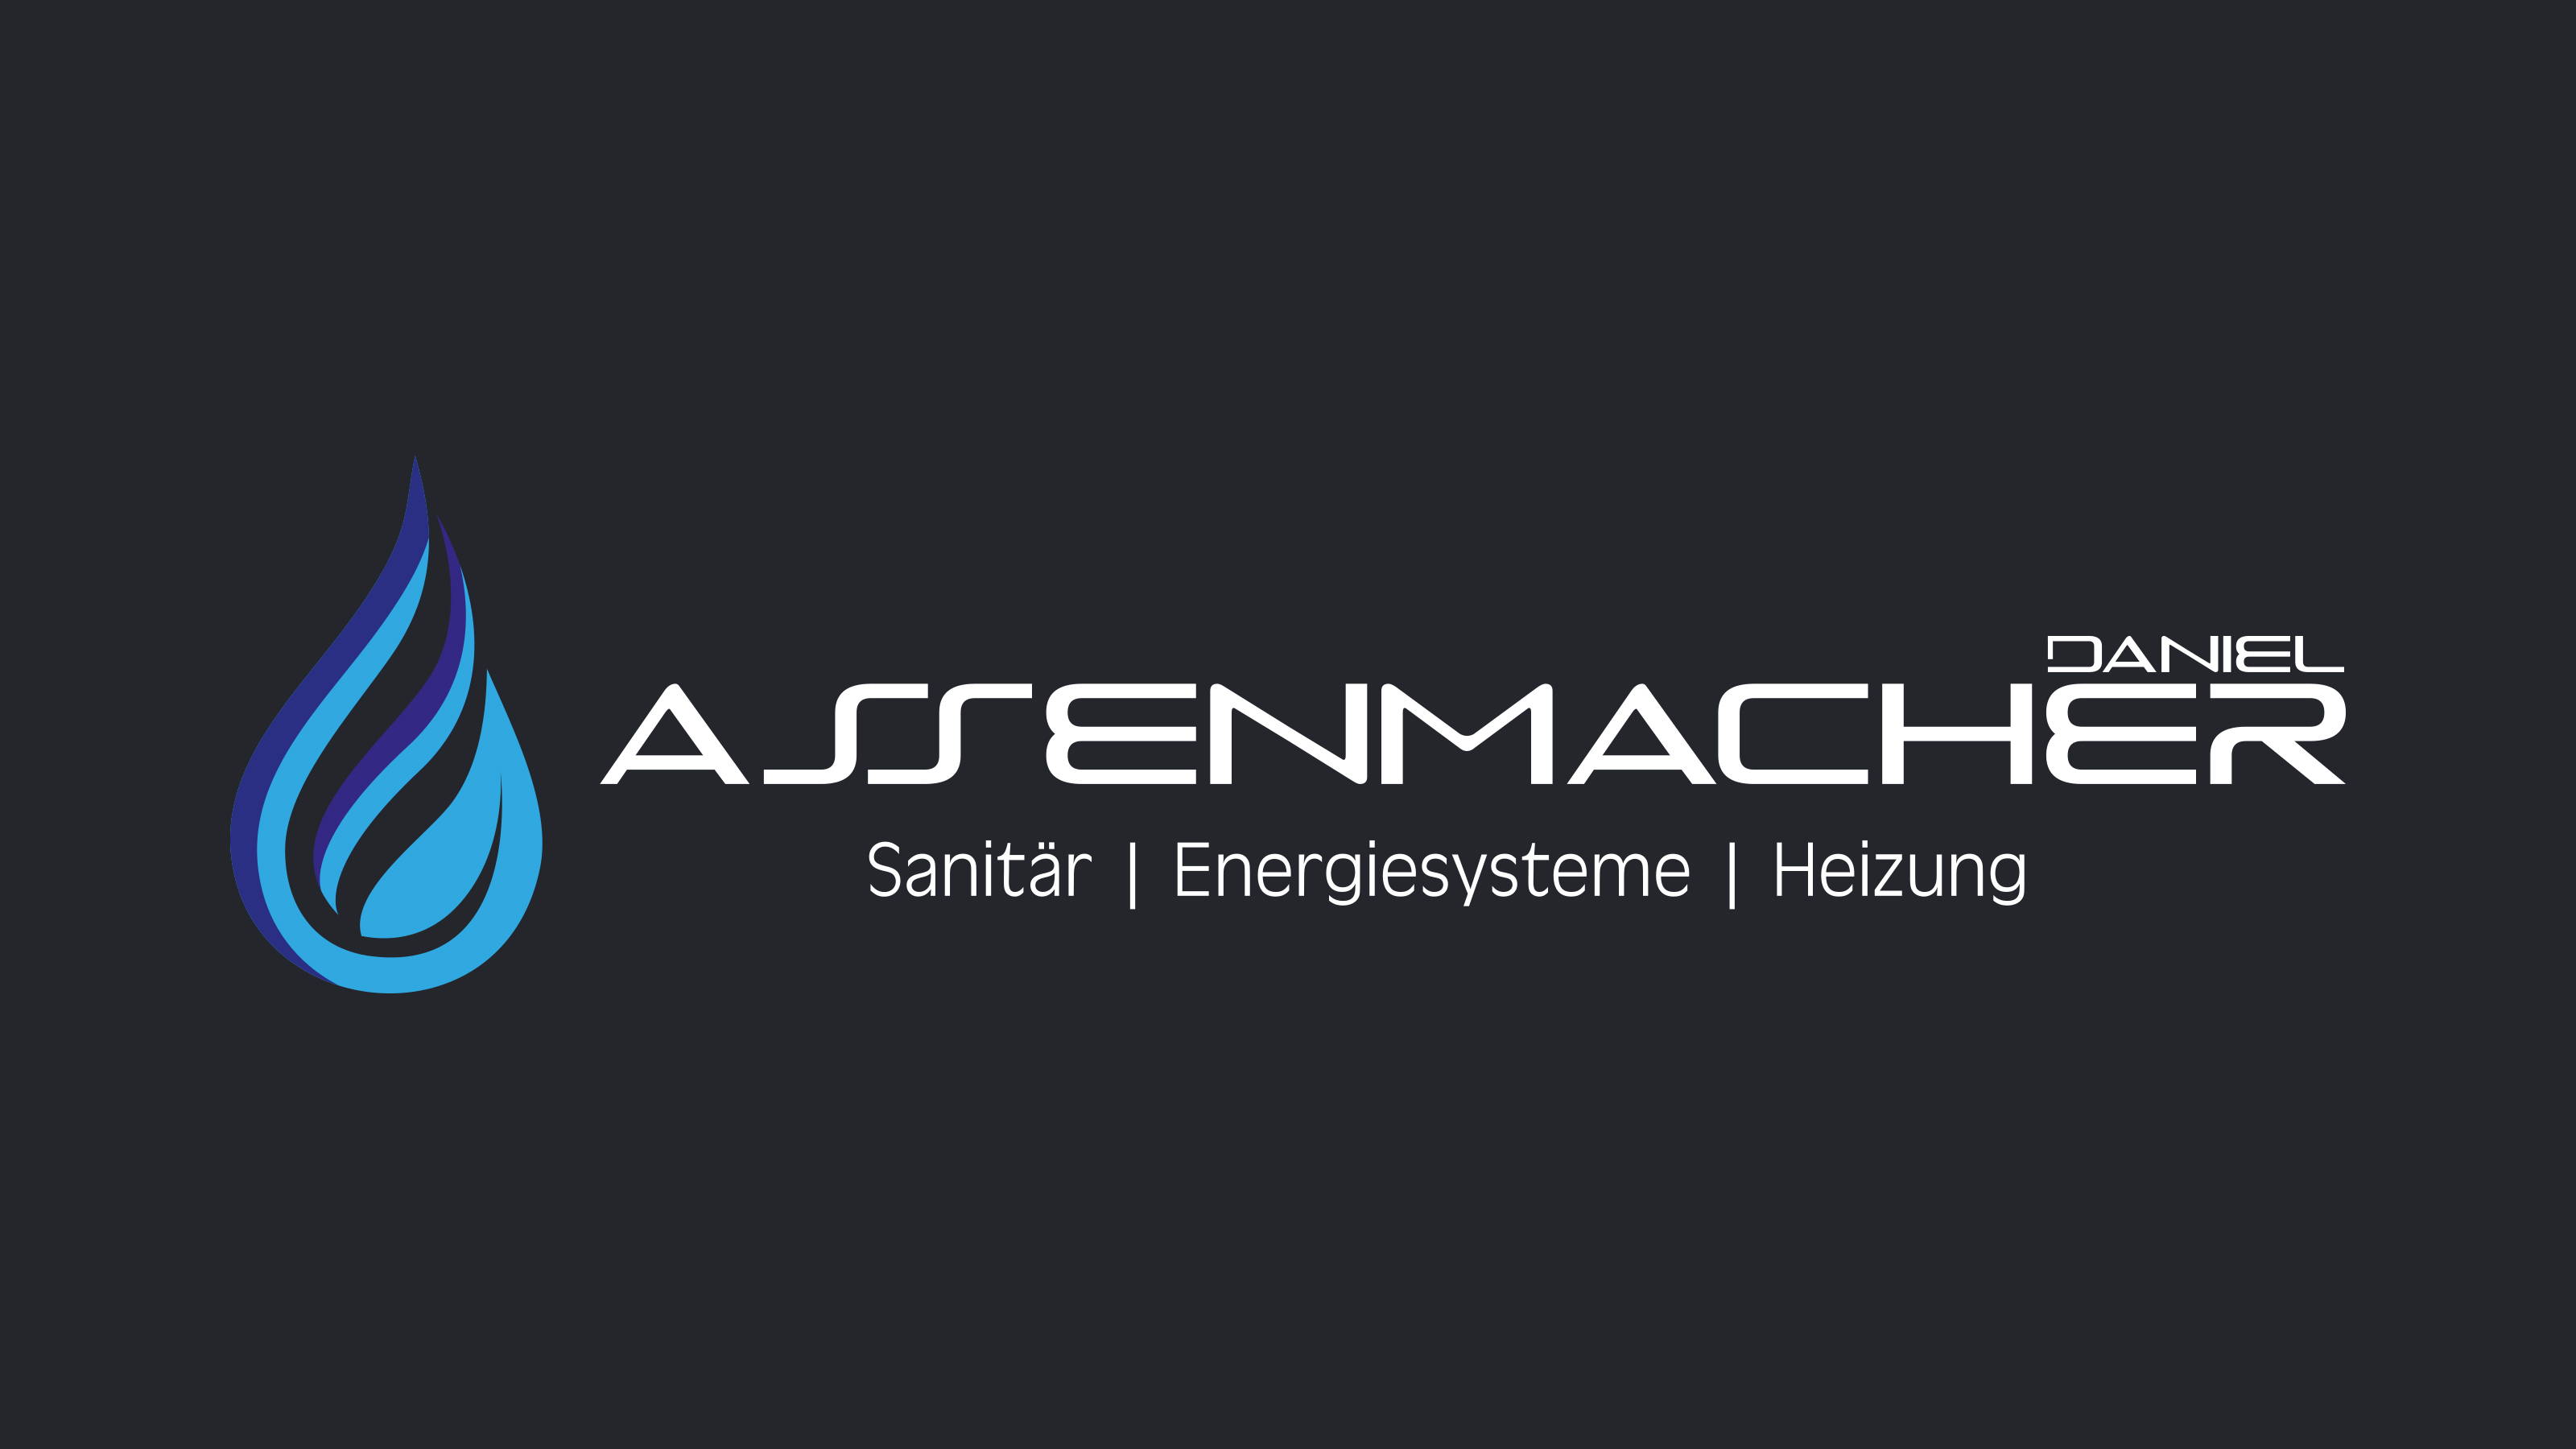 DANIEL ASSENMACHER | Sanitär - Energiesysteme - Heizung